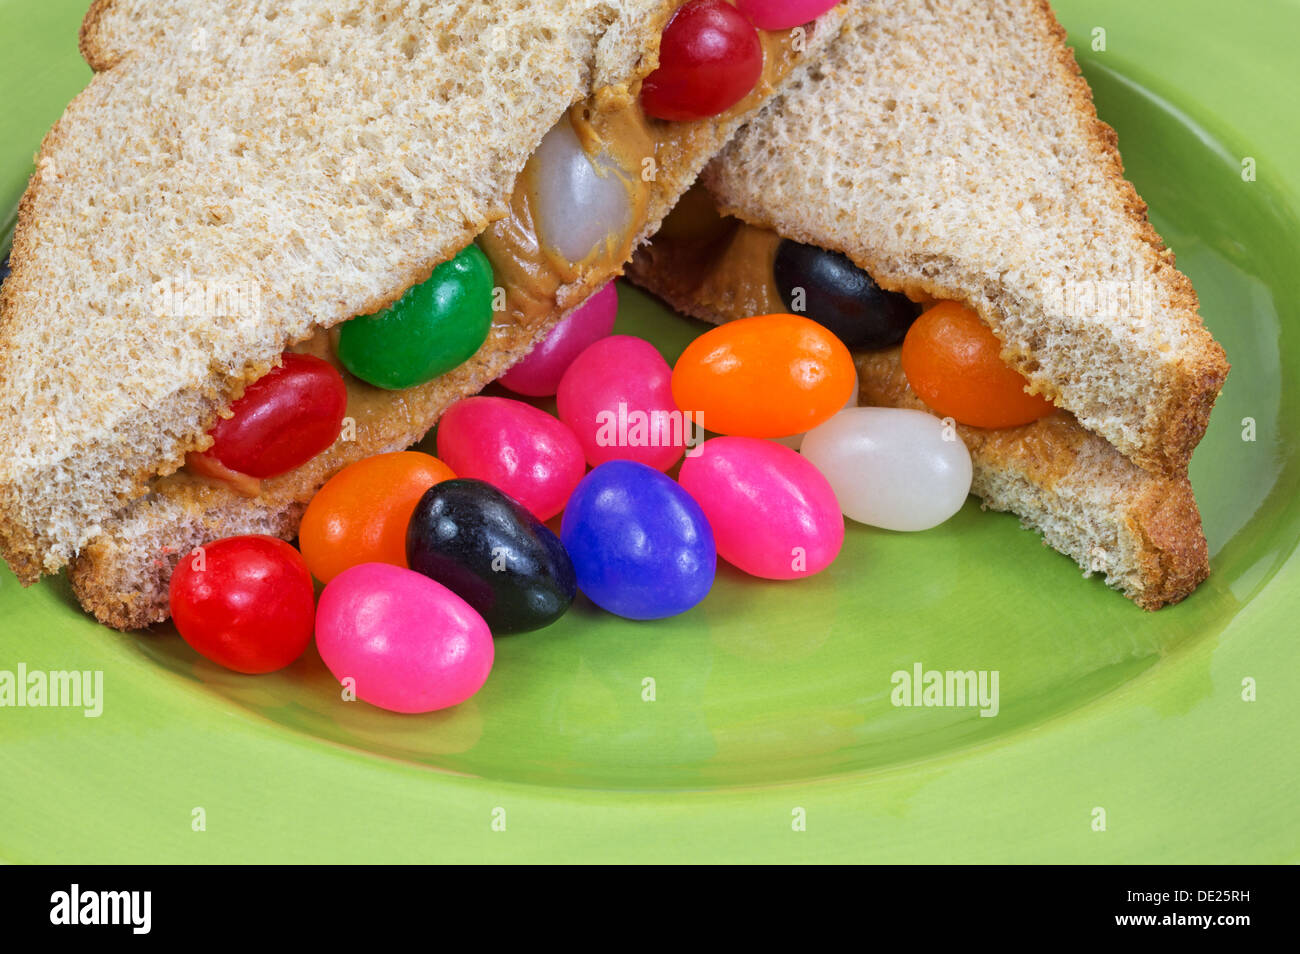 Eine Nahaufnahme eines Erdnussbutter und Marmelade Sandwich Bohne auf einer grünen Platte mit zusätzlichen Gummibärchen. Stockfoto